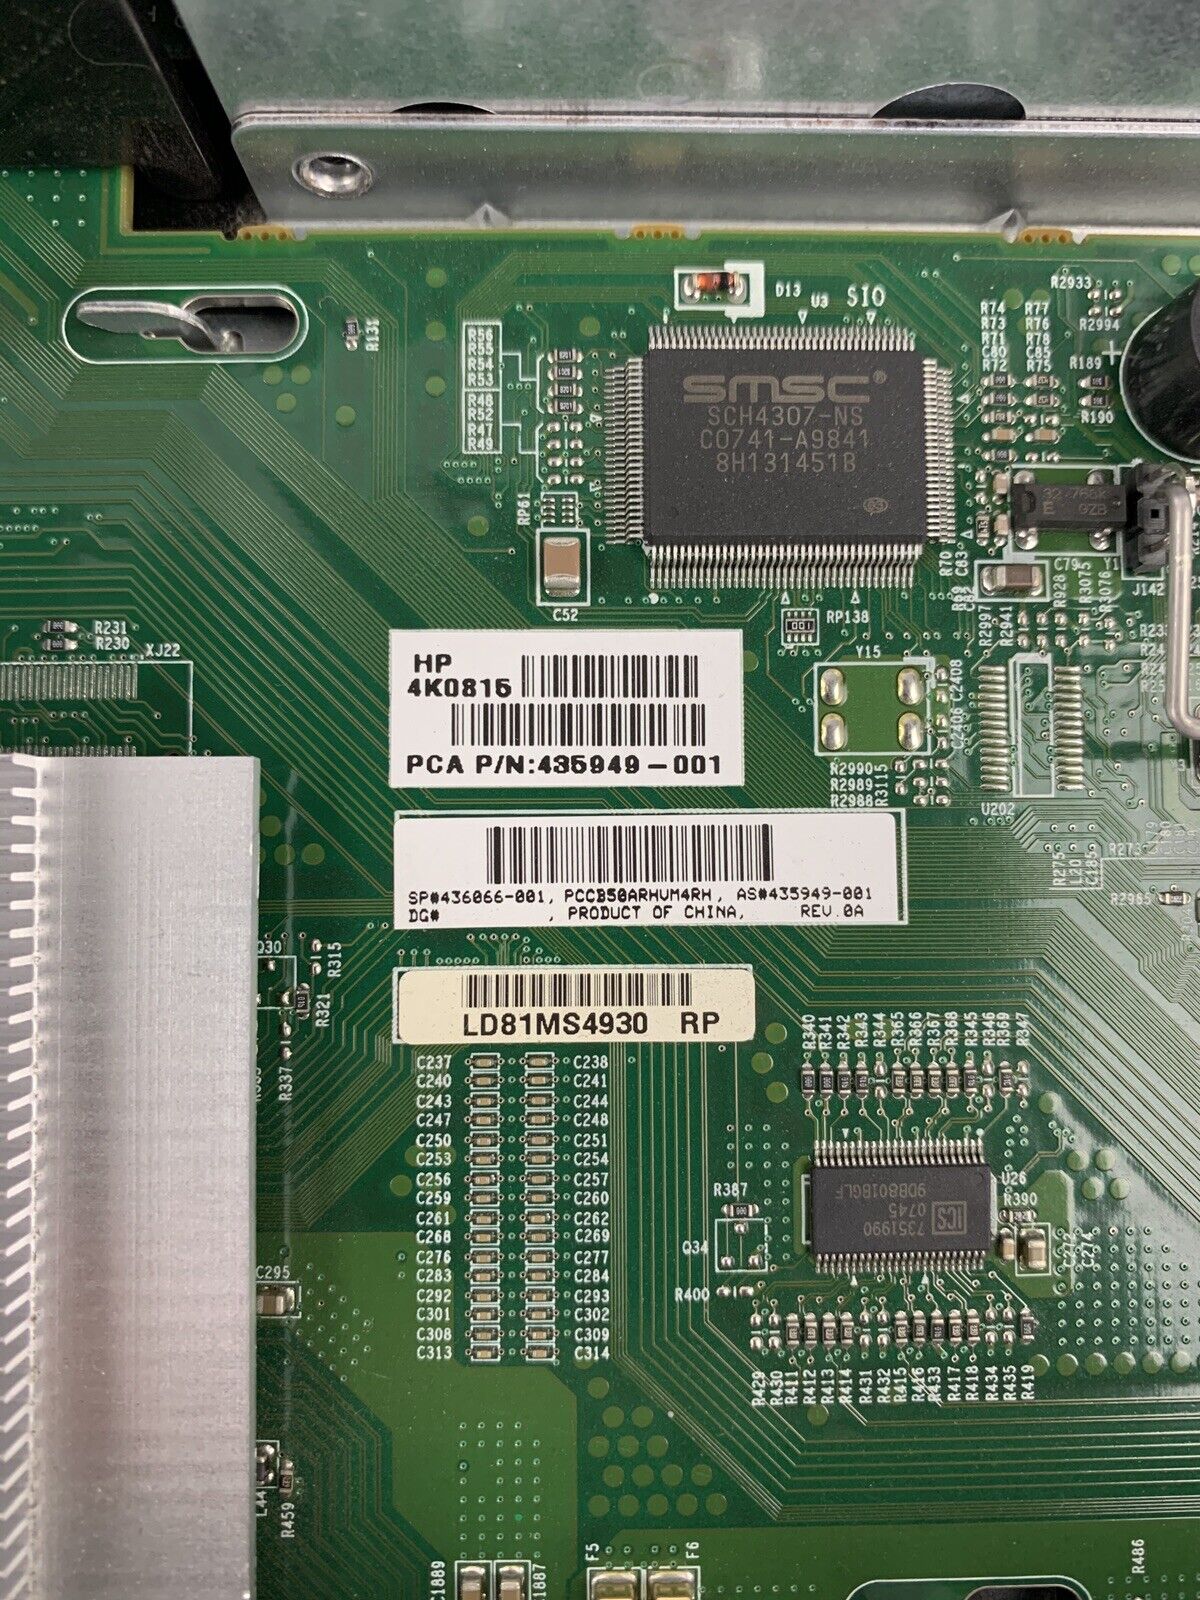 HP Proliant DL360 G5 Server 2x E5420 2.5 GHz 16 GB RAM No HDD No OS